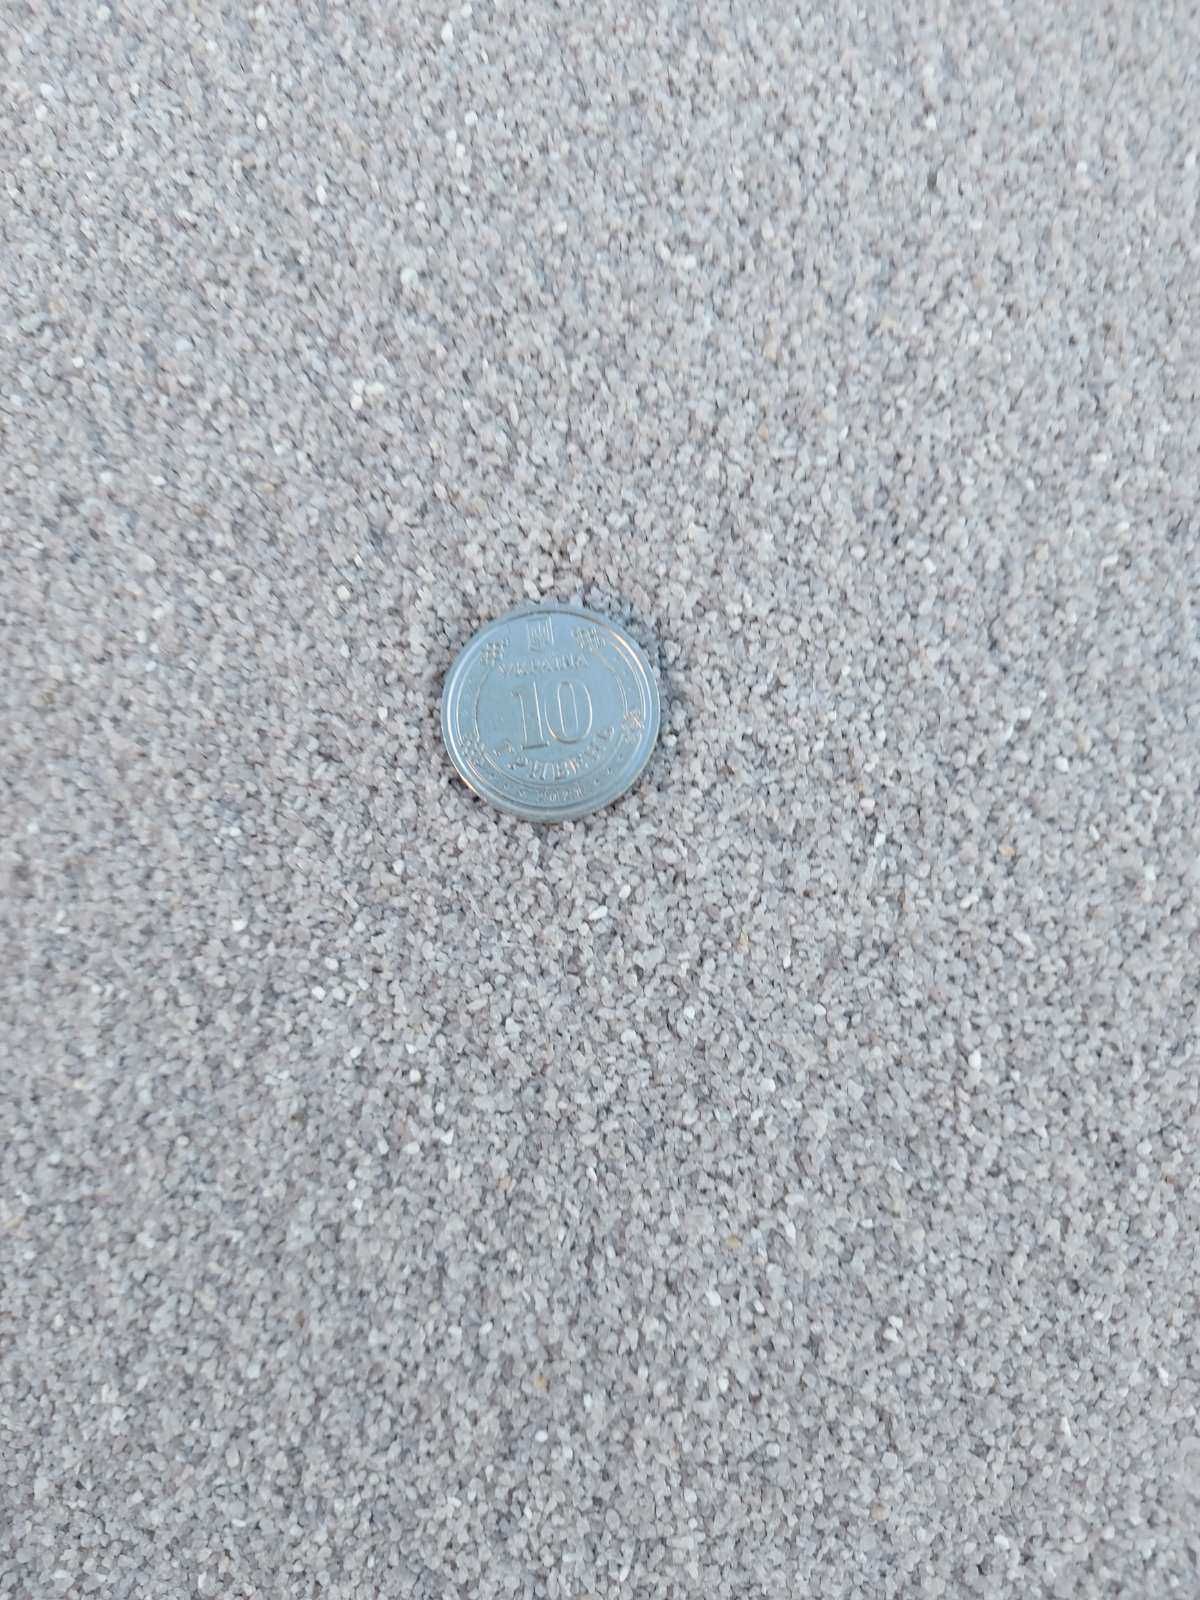 Песок кварцевый для пескоструйных работ. Бесплатно привезу по Киеву